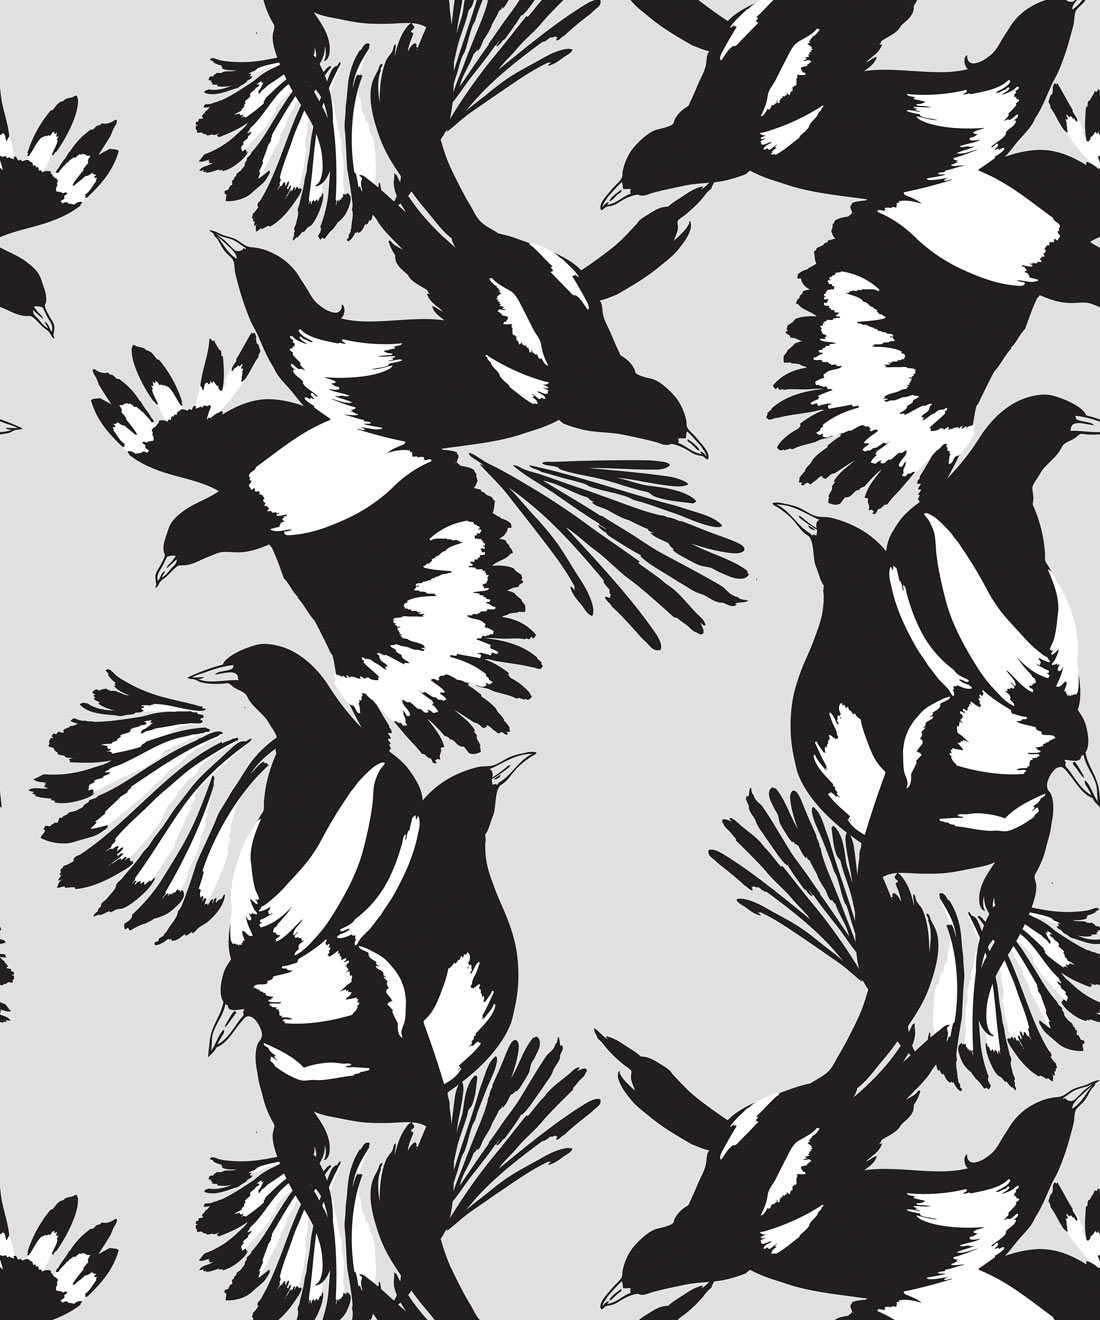 Magpie Wallpaper - Milton & King - Kingdom Home - Papier peint oiseau - Swatch noir et blanc